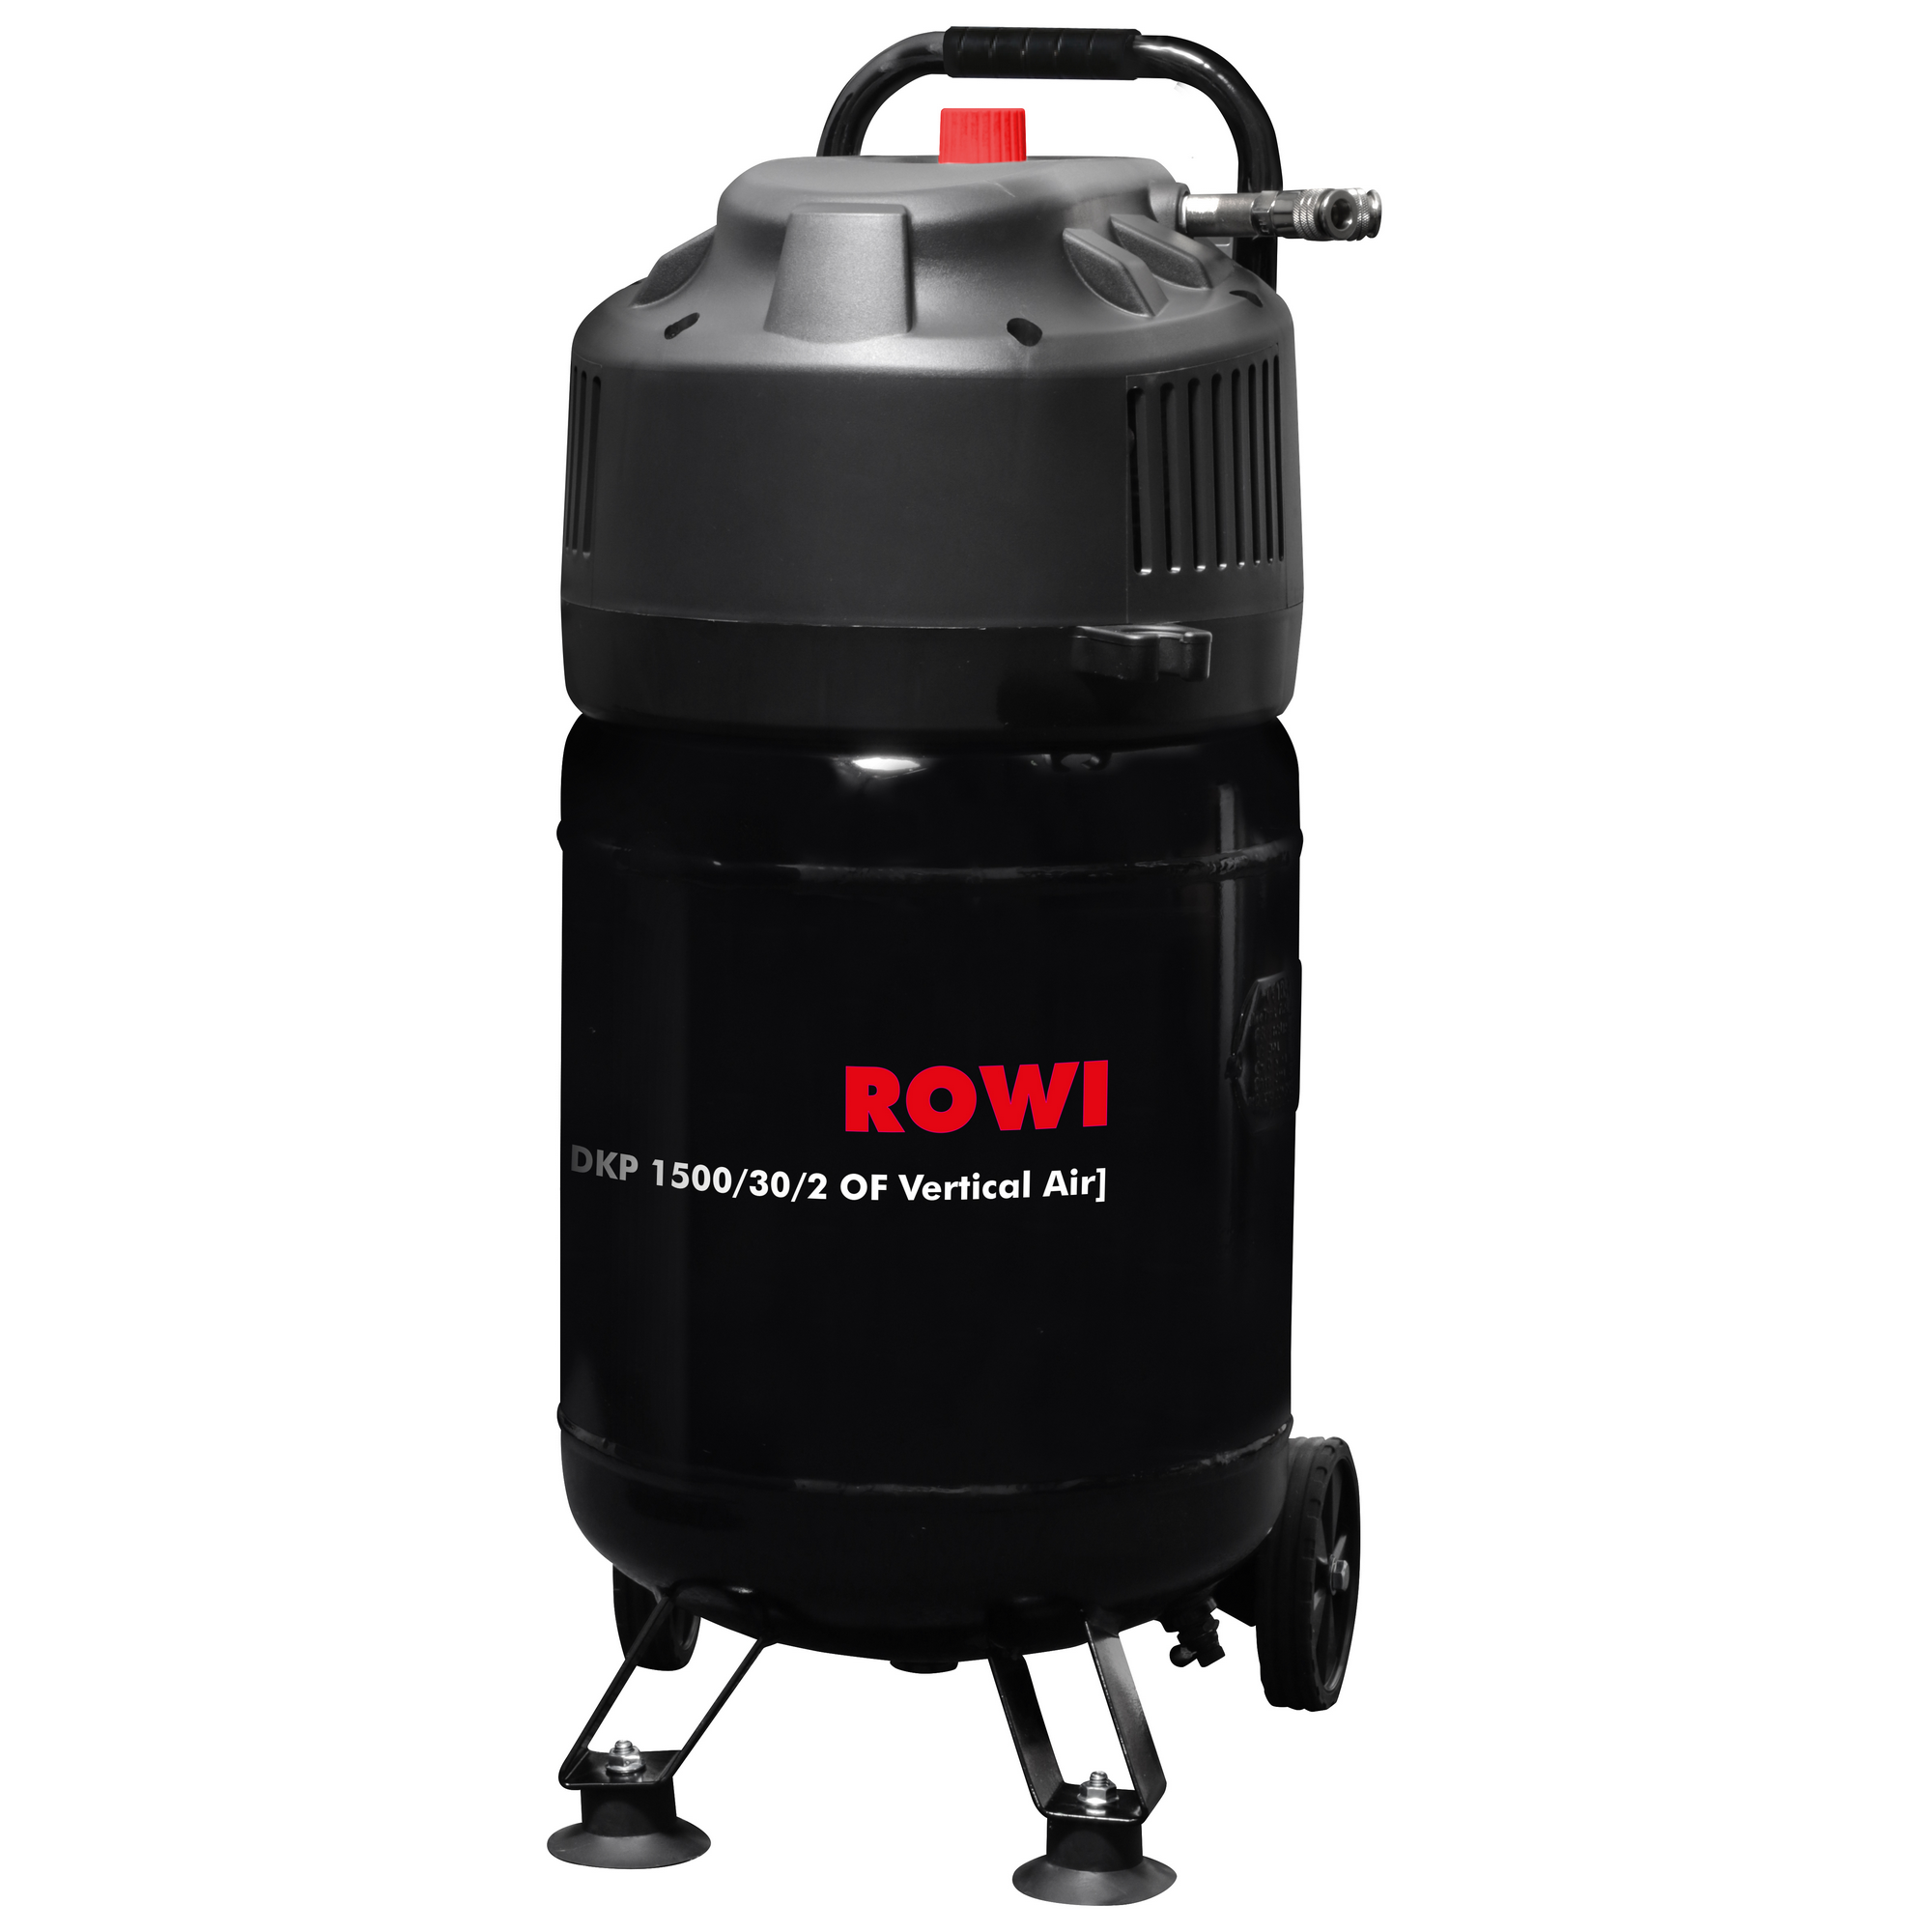 Rowi Kompressor 'DKP 1500/30/2 OF Vertical Air' 10 bar 72-240 l/min